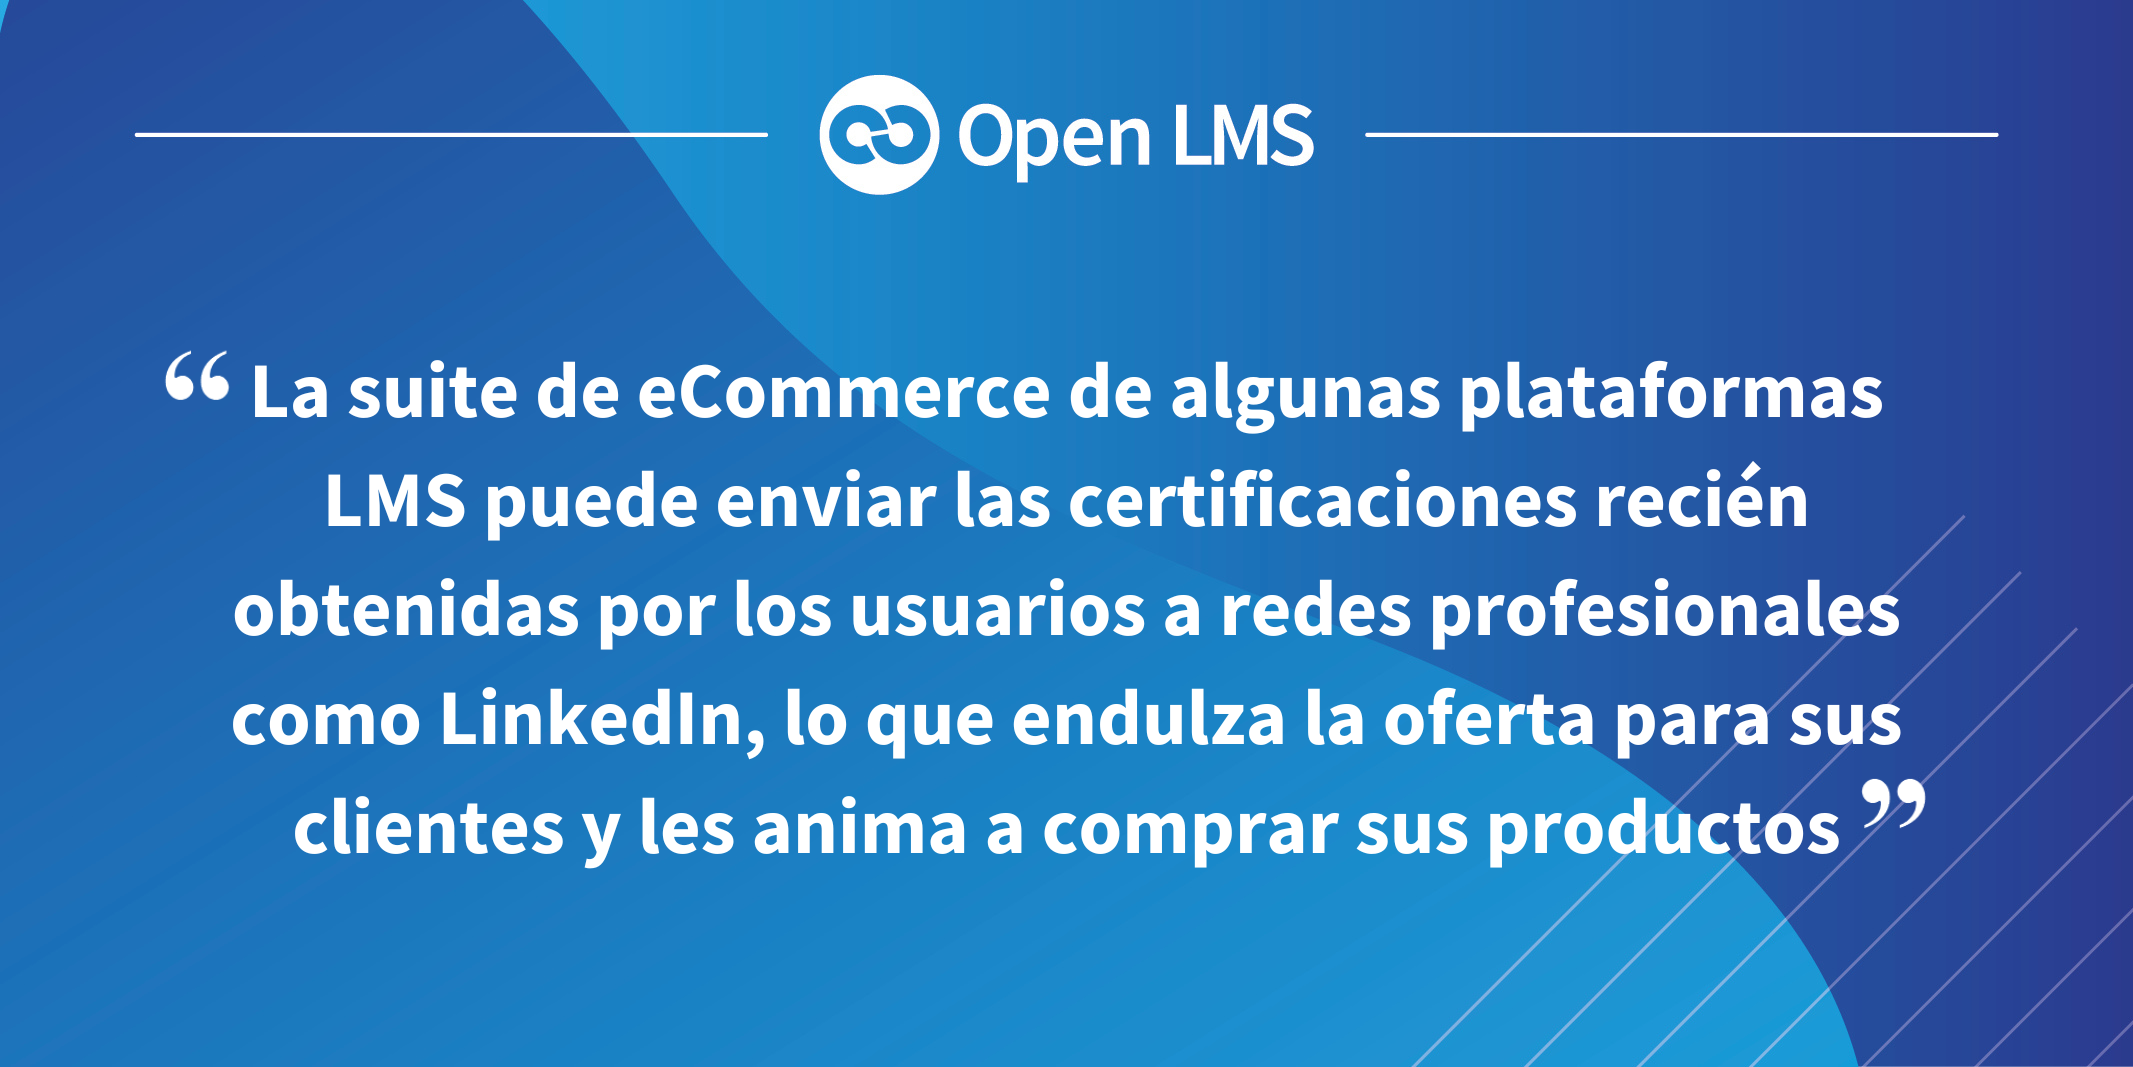 La suite de eCommerce de algunas plataformas LMS puede enviar las certificaciones recién obtenidas por los usuarios a redes profesionales como LinkedIn, lo que endulza la oferta para sus clientes y les anima a comprar sus productos